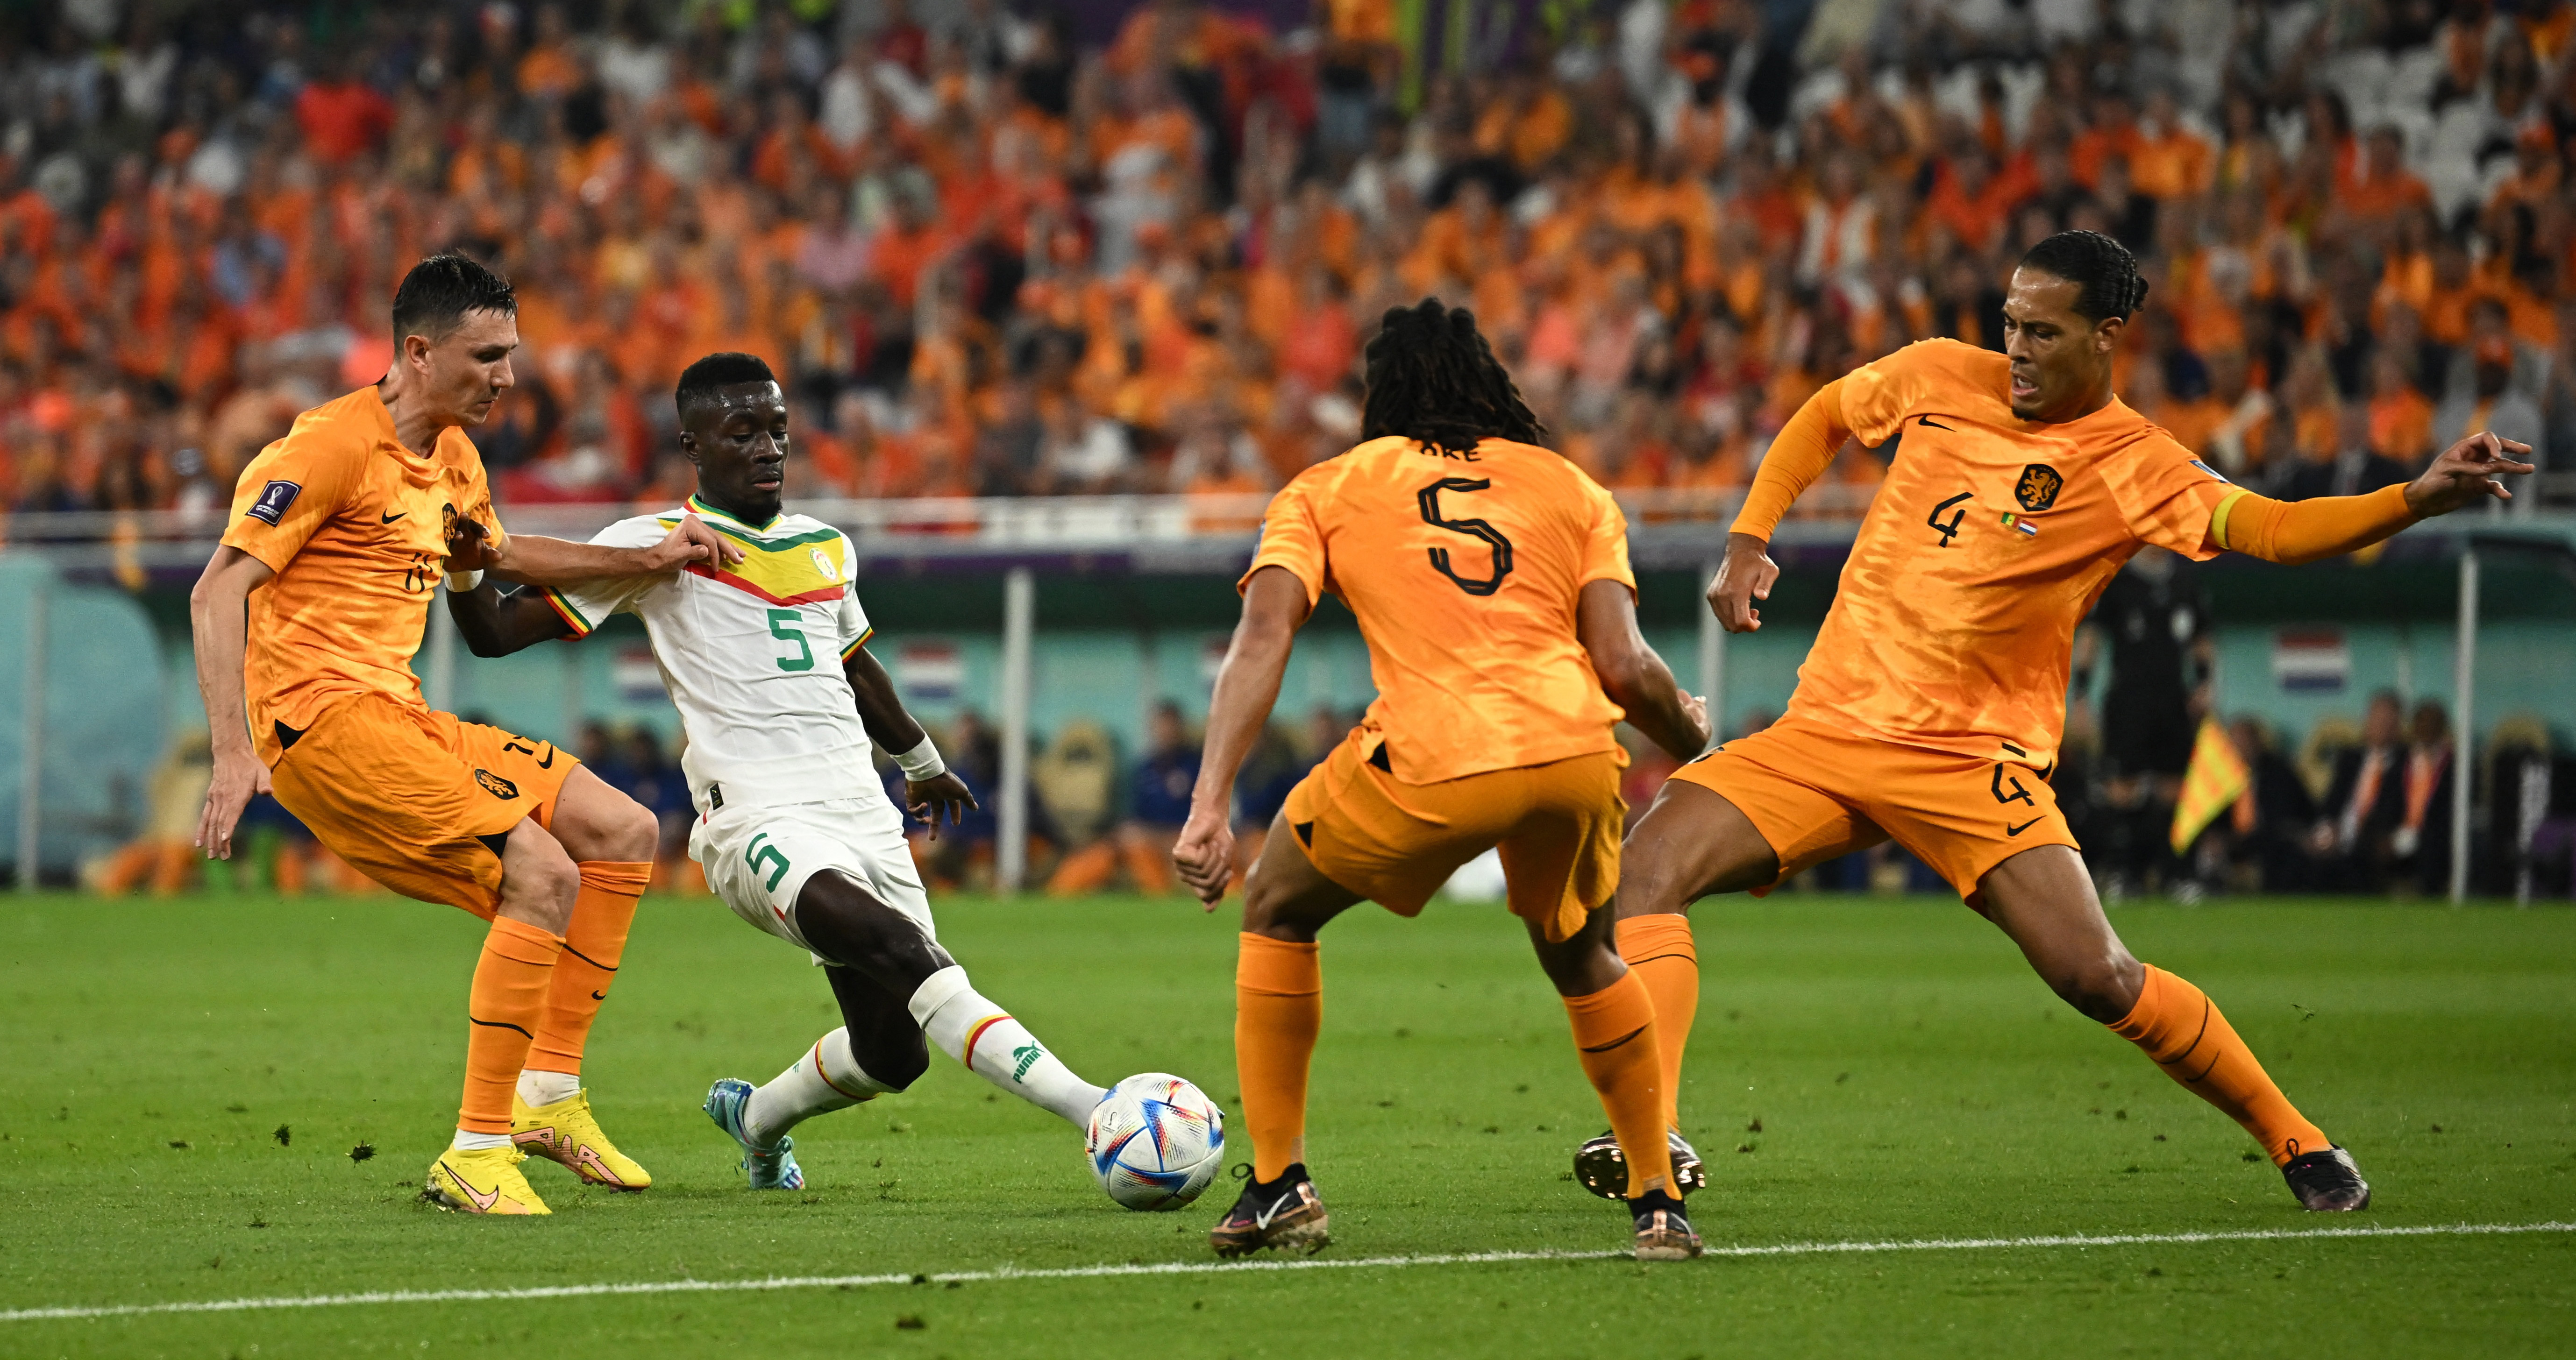 La línea defensiva de Países Bajos para recuperar ante Idrissa Gana Gueye y comenzar el contragolpe. Foto: REUTERS/Dylan Martinez